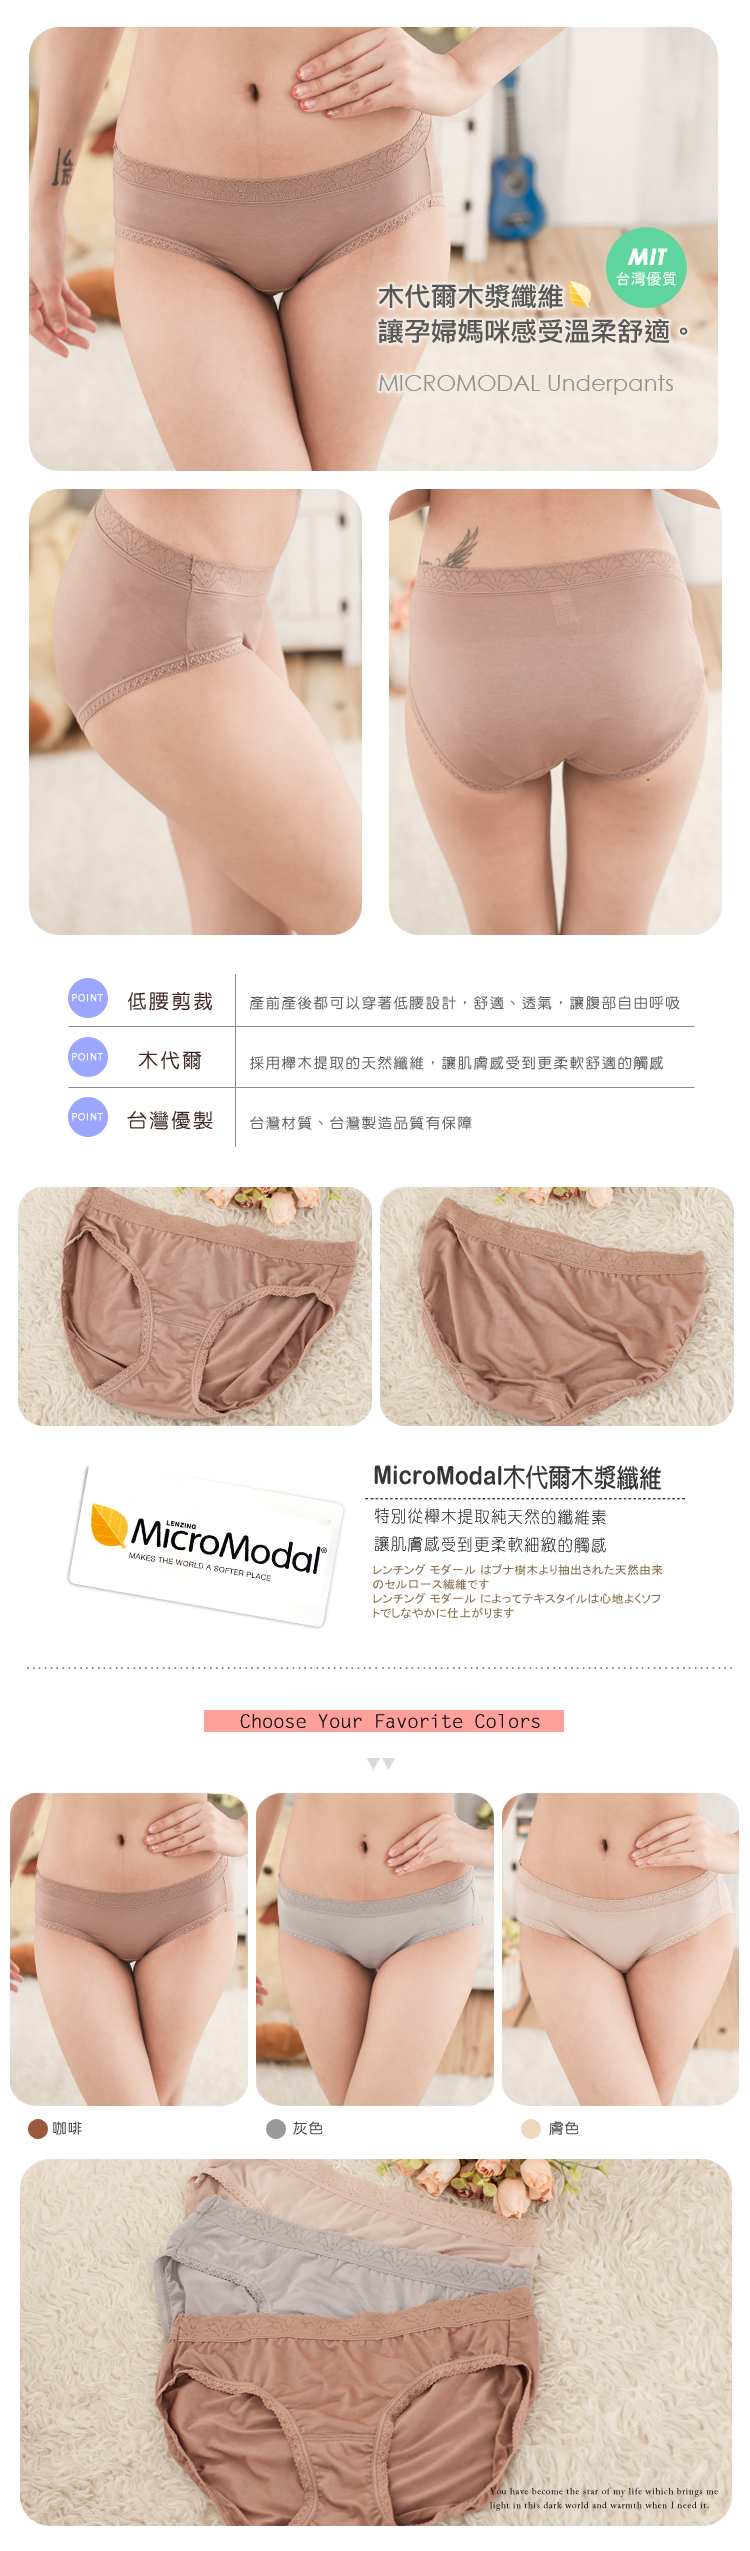 【露娜斯】木代爾舒柔質感舒適低腰孕婦褲【咖啡/膚/灰】台灣製P2018